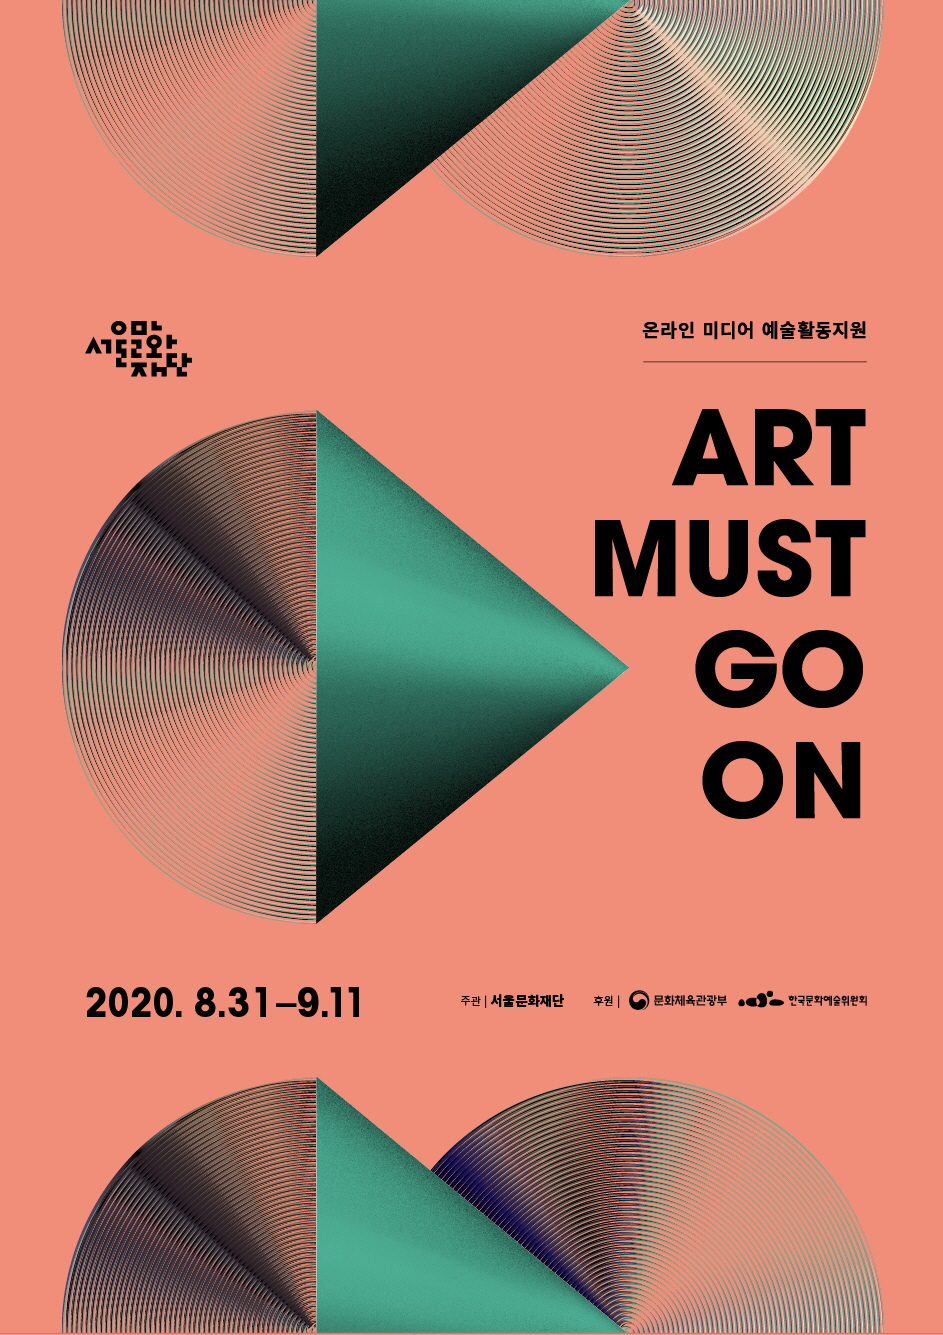 서울문화재단이 온라인 미디어 예술활동을 지원하는 ‘아트 머스트 고 온’ 사업에 참여할 예술인과 크리에이터를 모집한다.